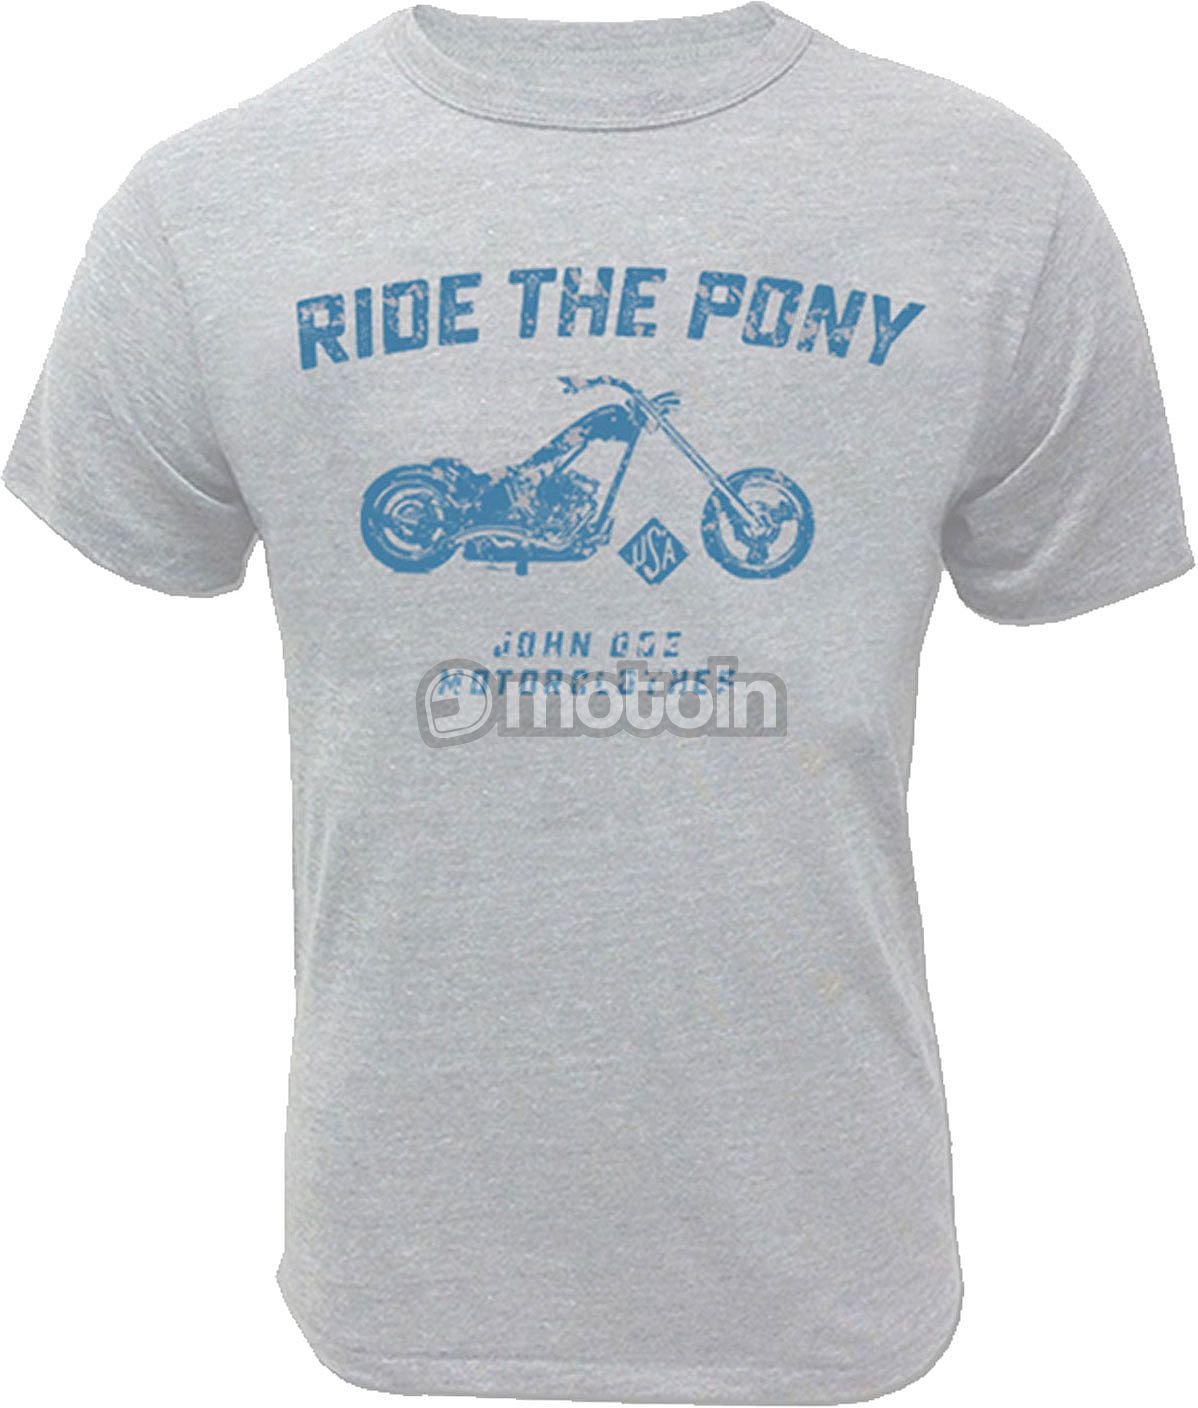 John Doe Ride The Pony, t-shirt